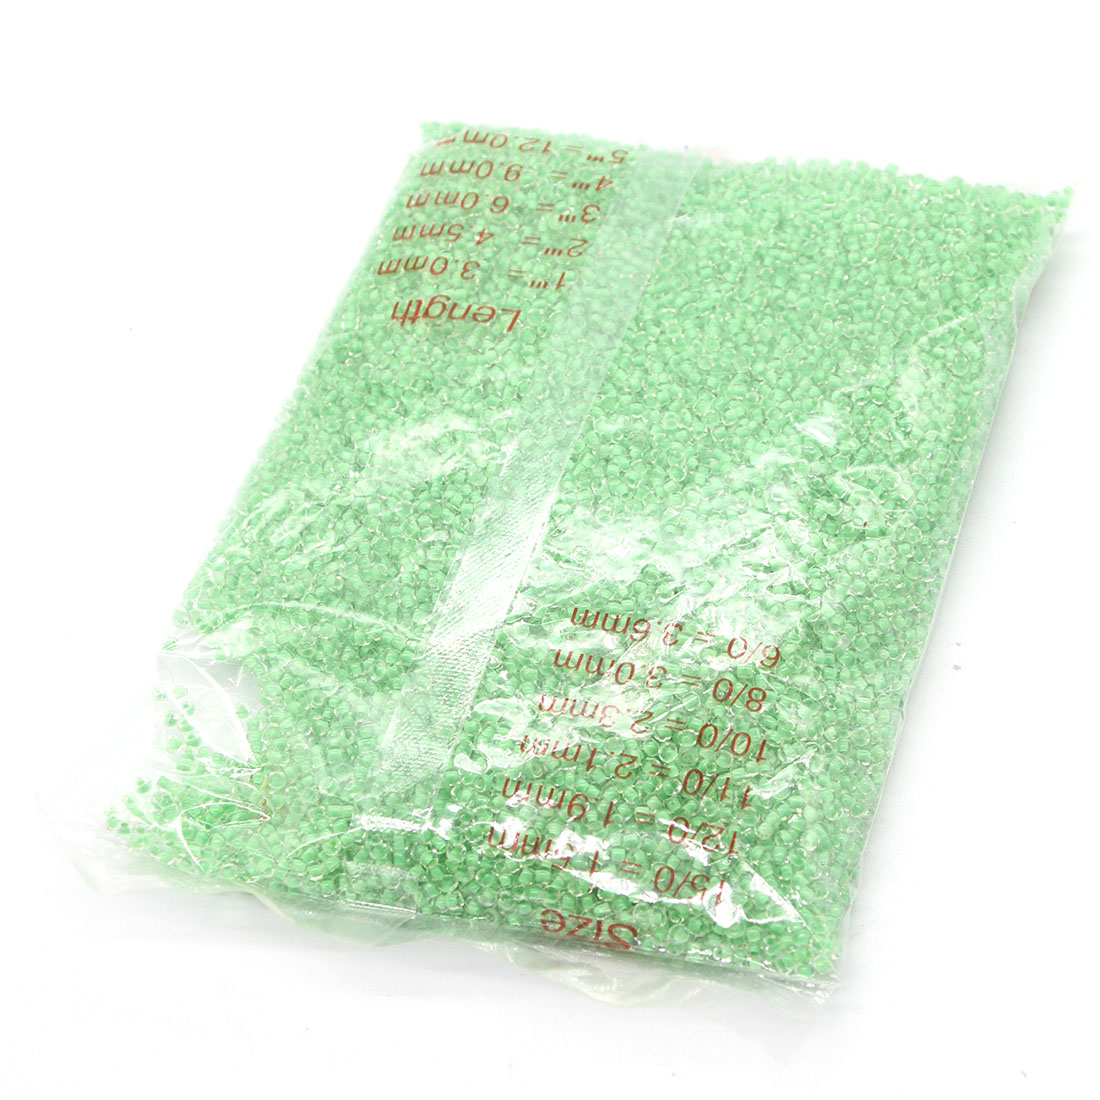 Light green 3mm 10,000 packs